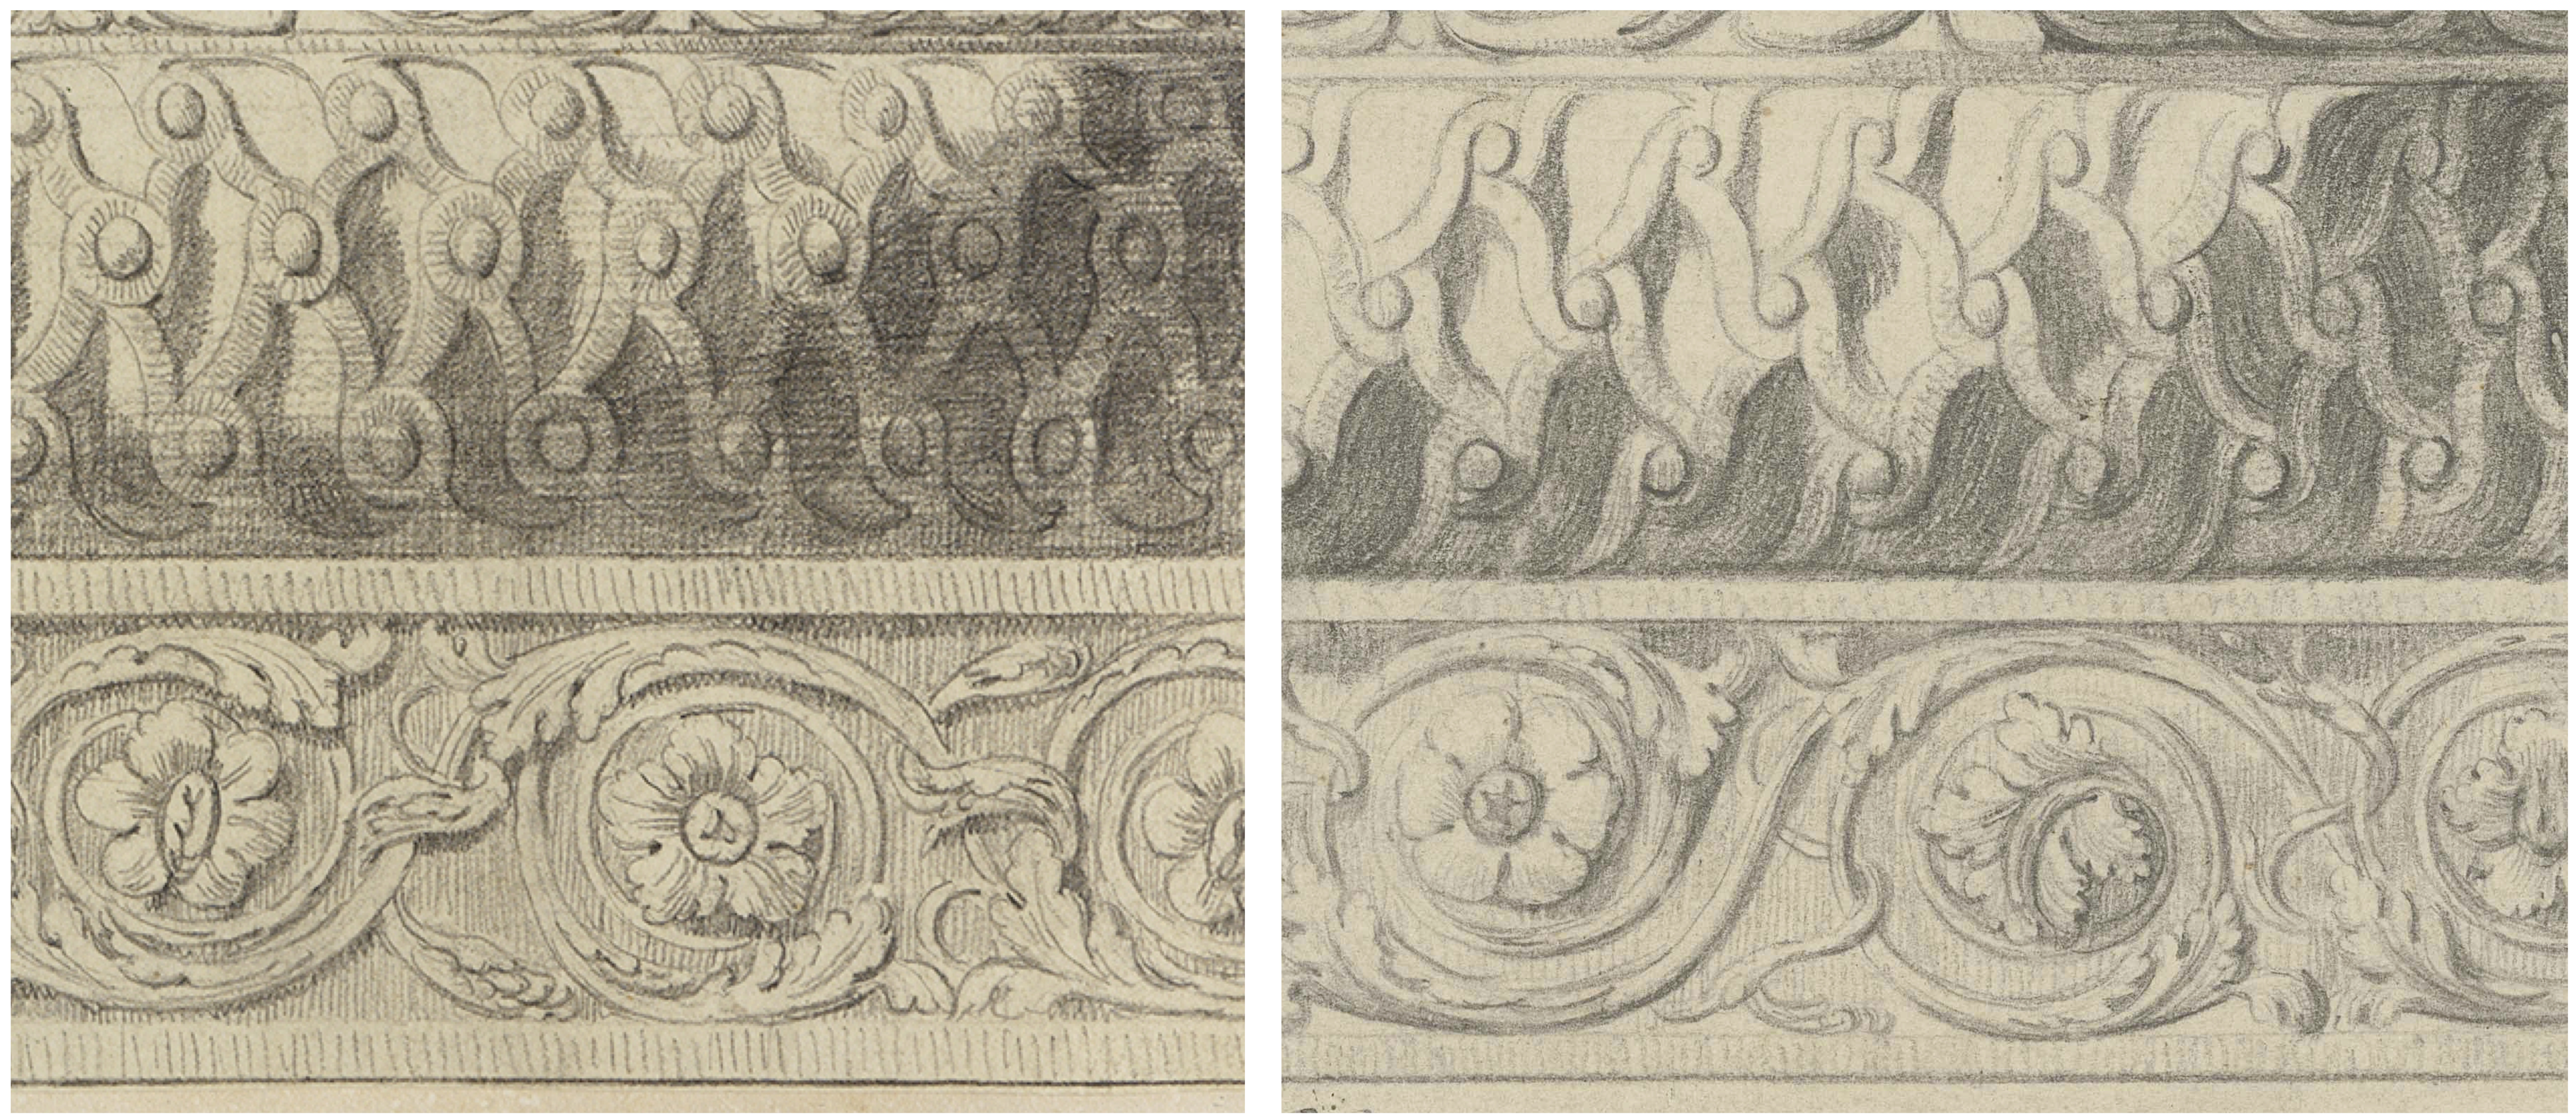 Fotomontage aus zwei Zeichnungsdetails, die die Säulenbasis zeigen. Gegenüberstellung der Details